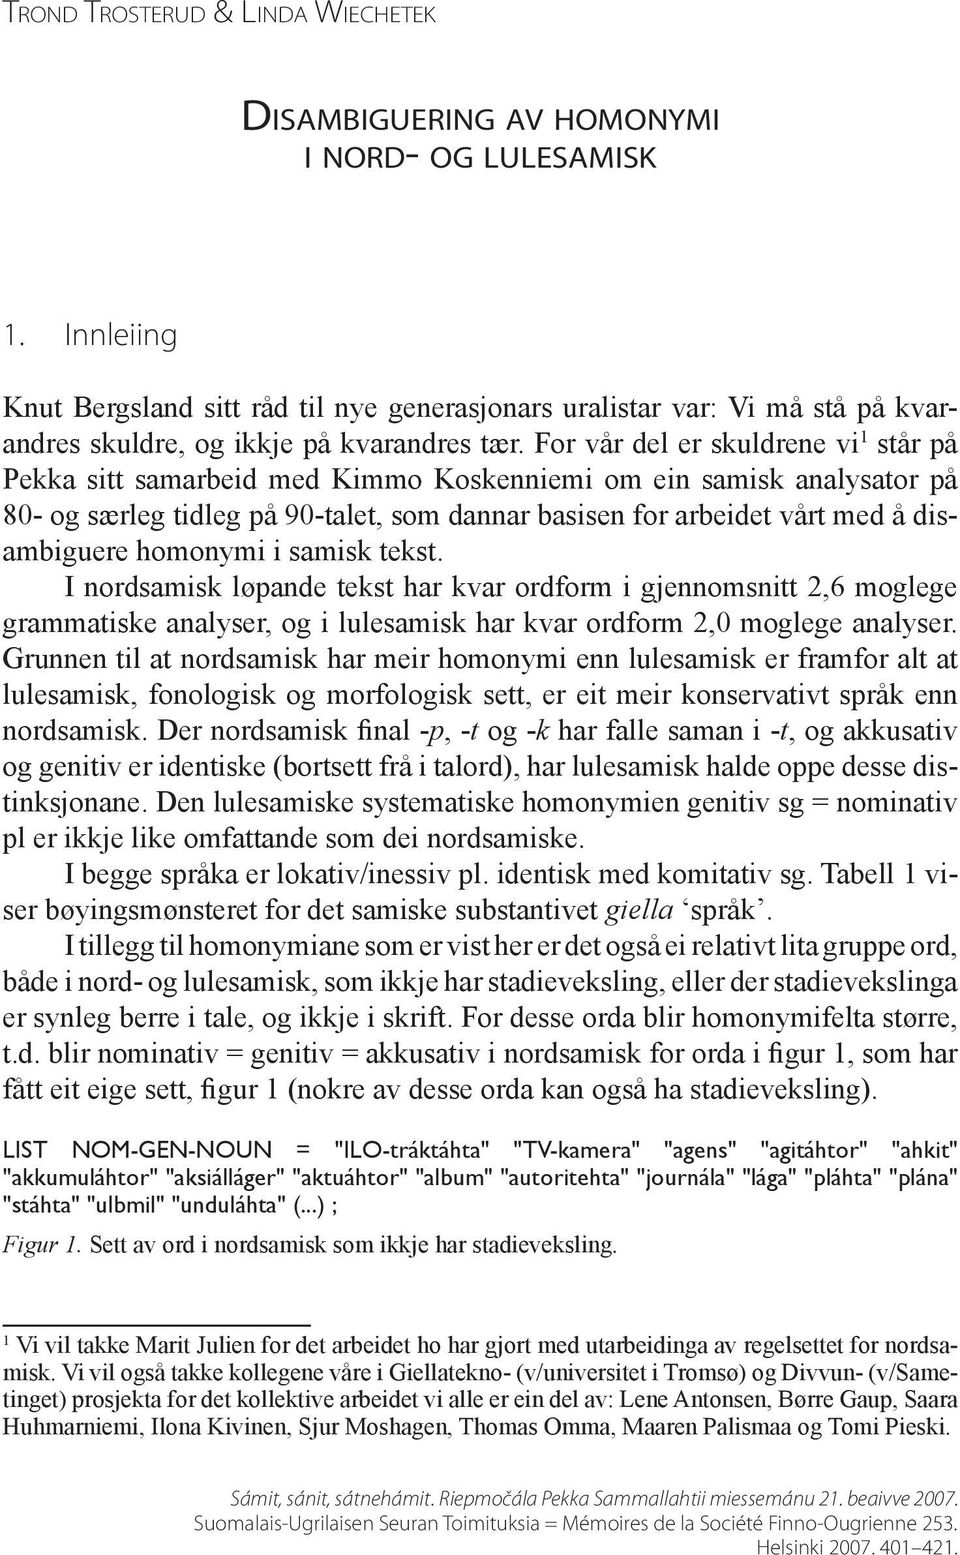 For vår del er skuldrene vi 1 står på Pekka sitt samarbeid med Kimmo Koskenniemi om ein samisk analysator på 80- og særleg tidleg på 90-talet, som dannar basisen for arbeidet vårt med å disambiguere